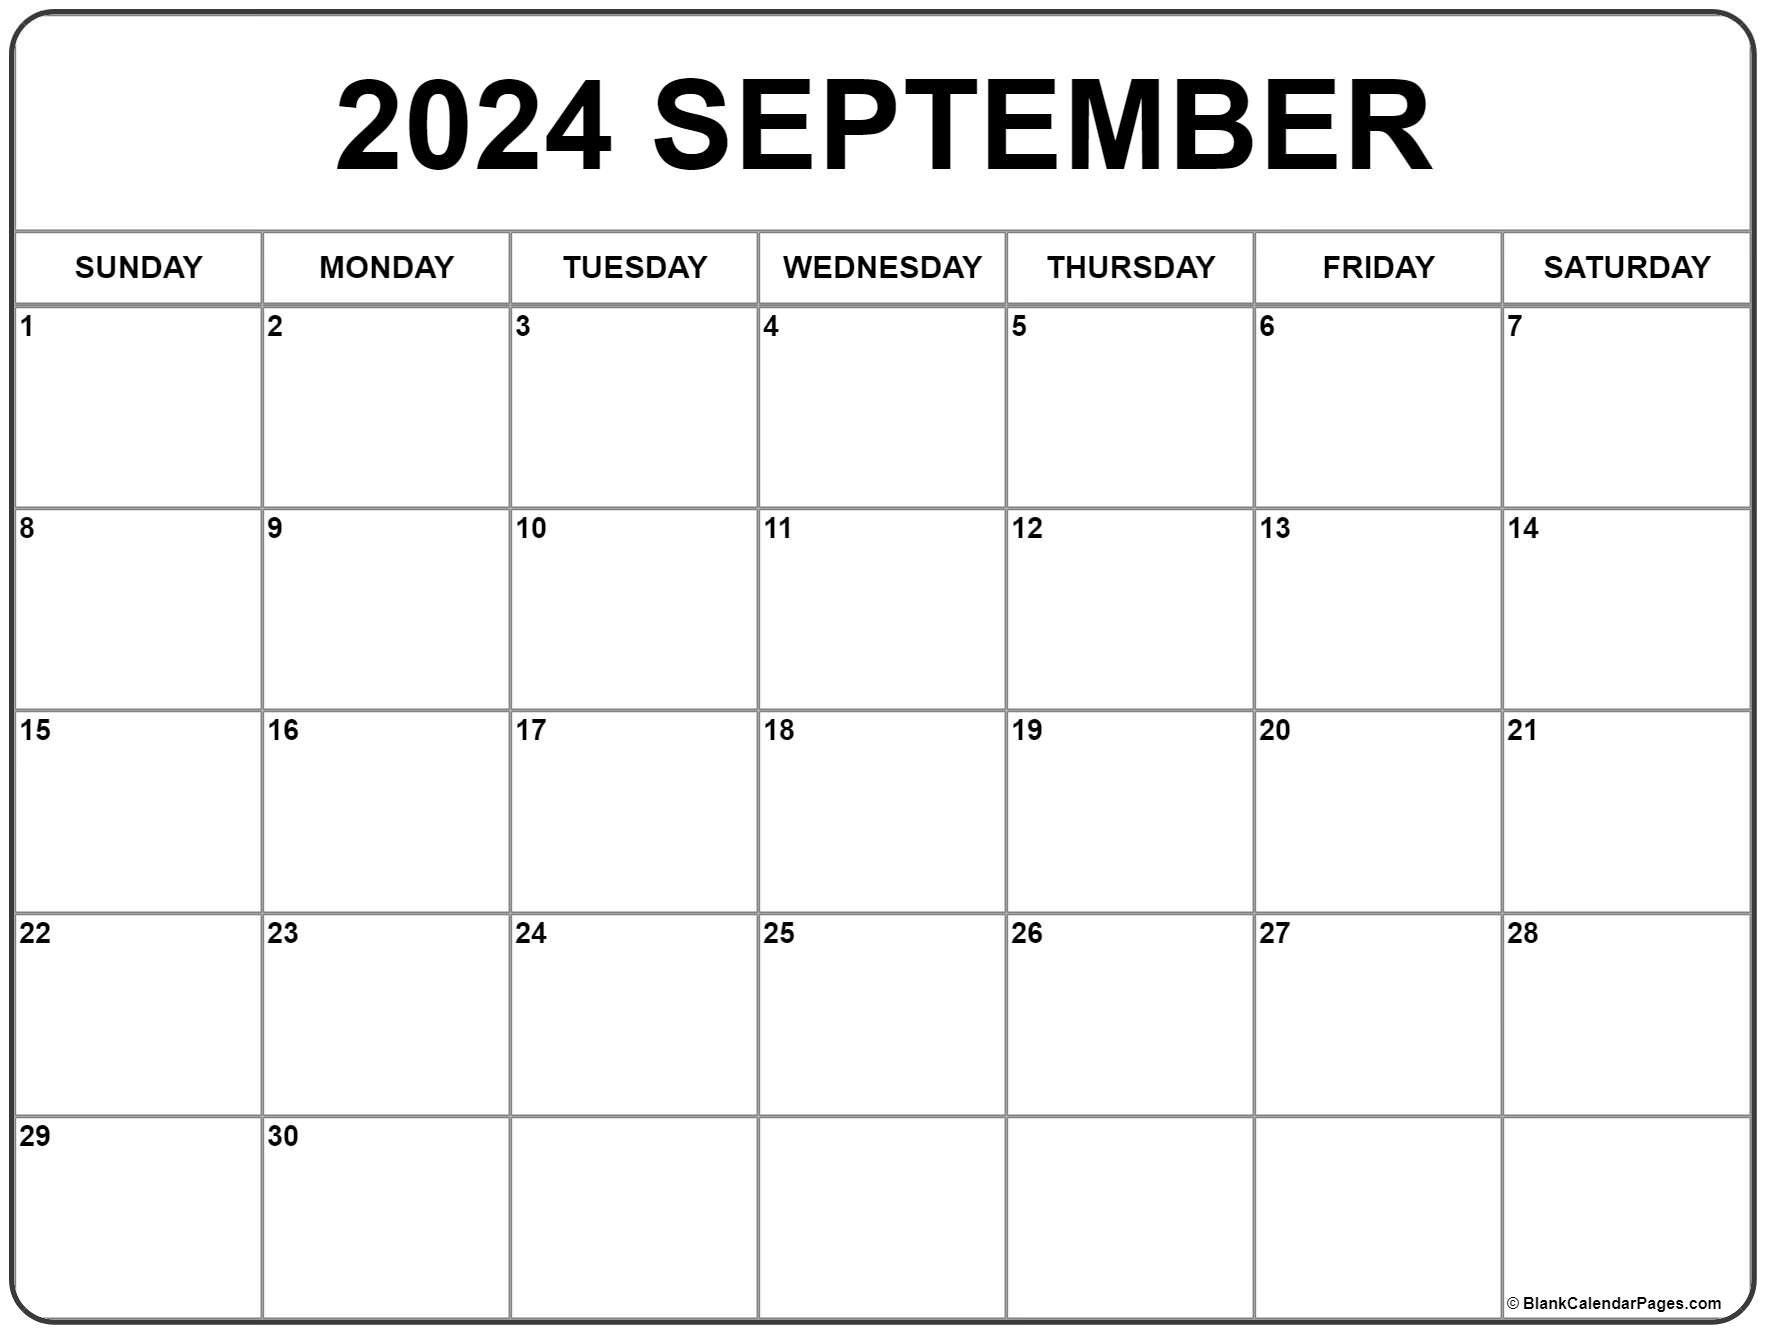 Free September 2022 Printable Calendar September 2022 Calendar | Free Printable Calendar Templates